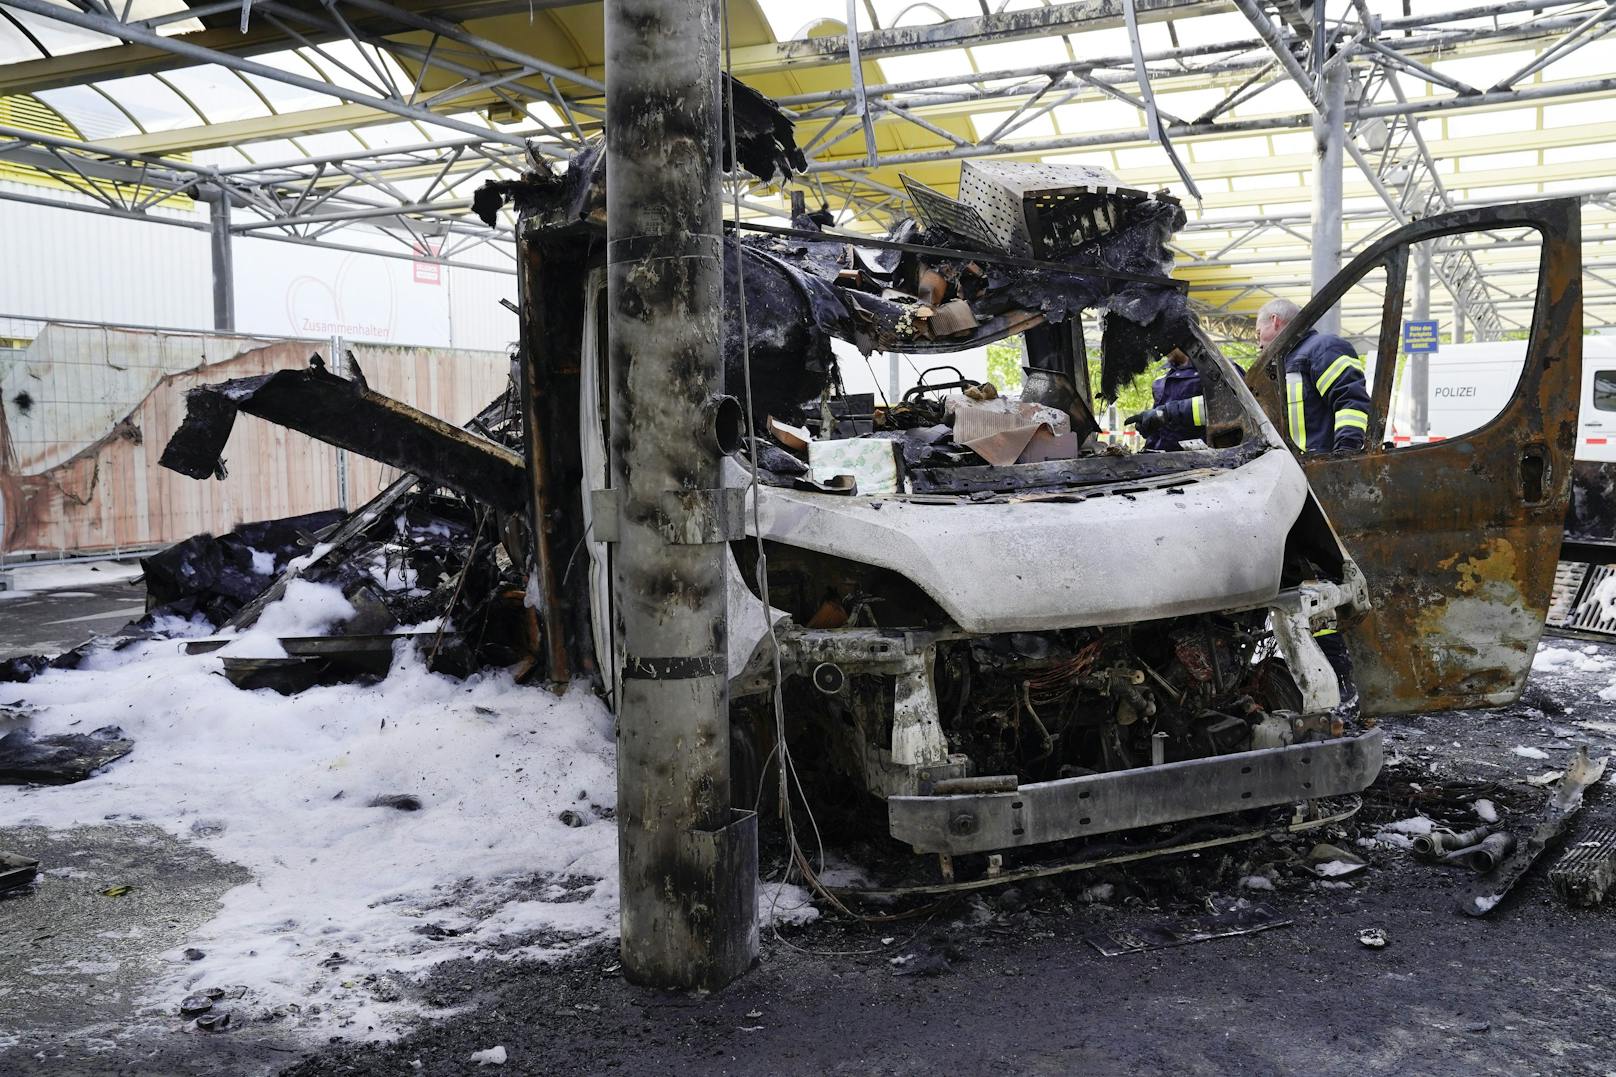 Sonntagnacht wurde die Feuerwehr bei Köln zu einem Einsatz gerufen, weil ein Wagen in Flammen stand.